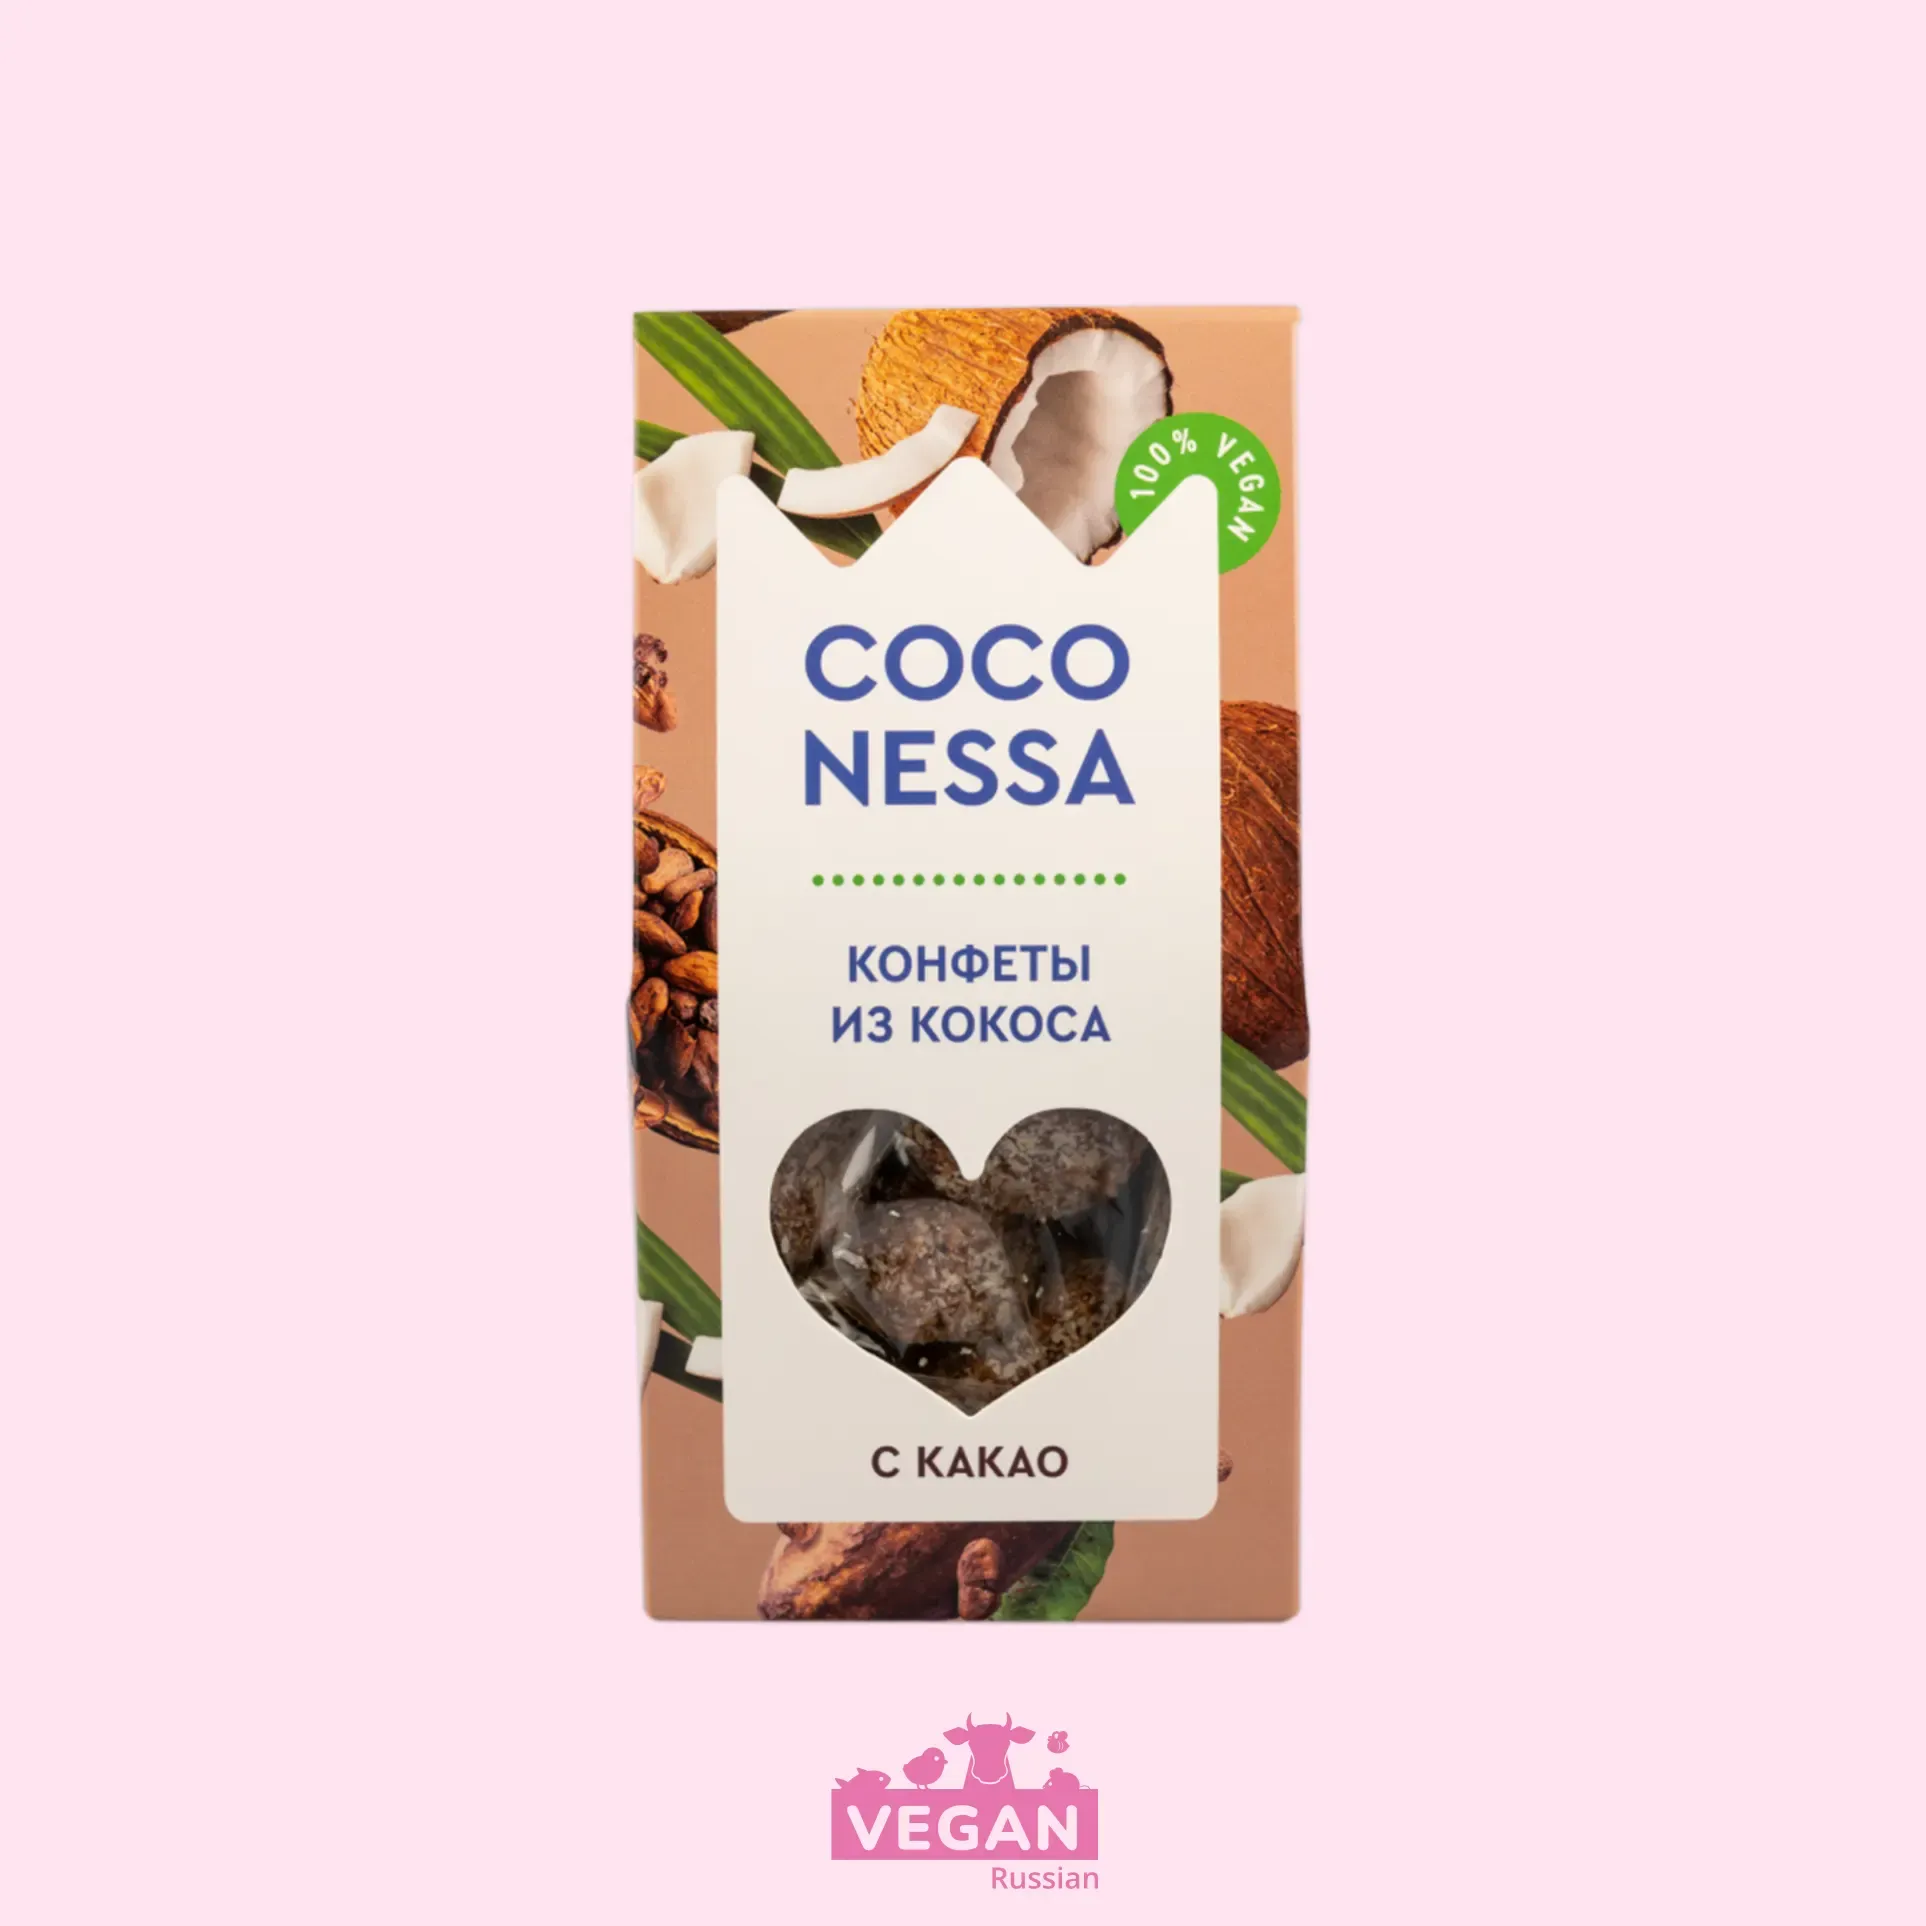 Кокосовые конфеты какао Coconessa 90 г